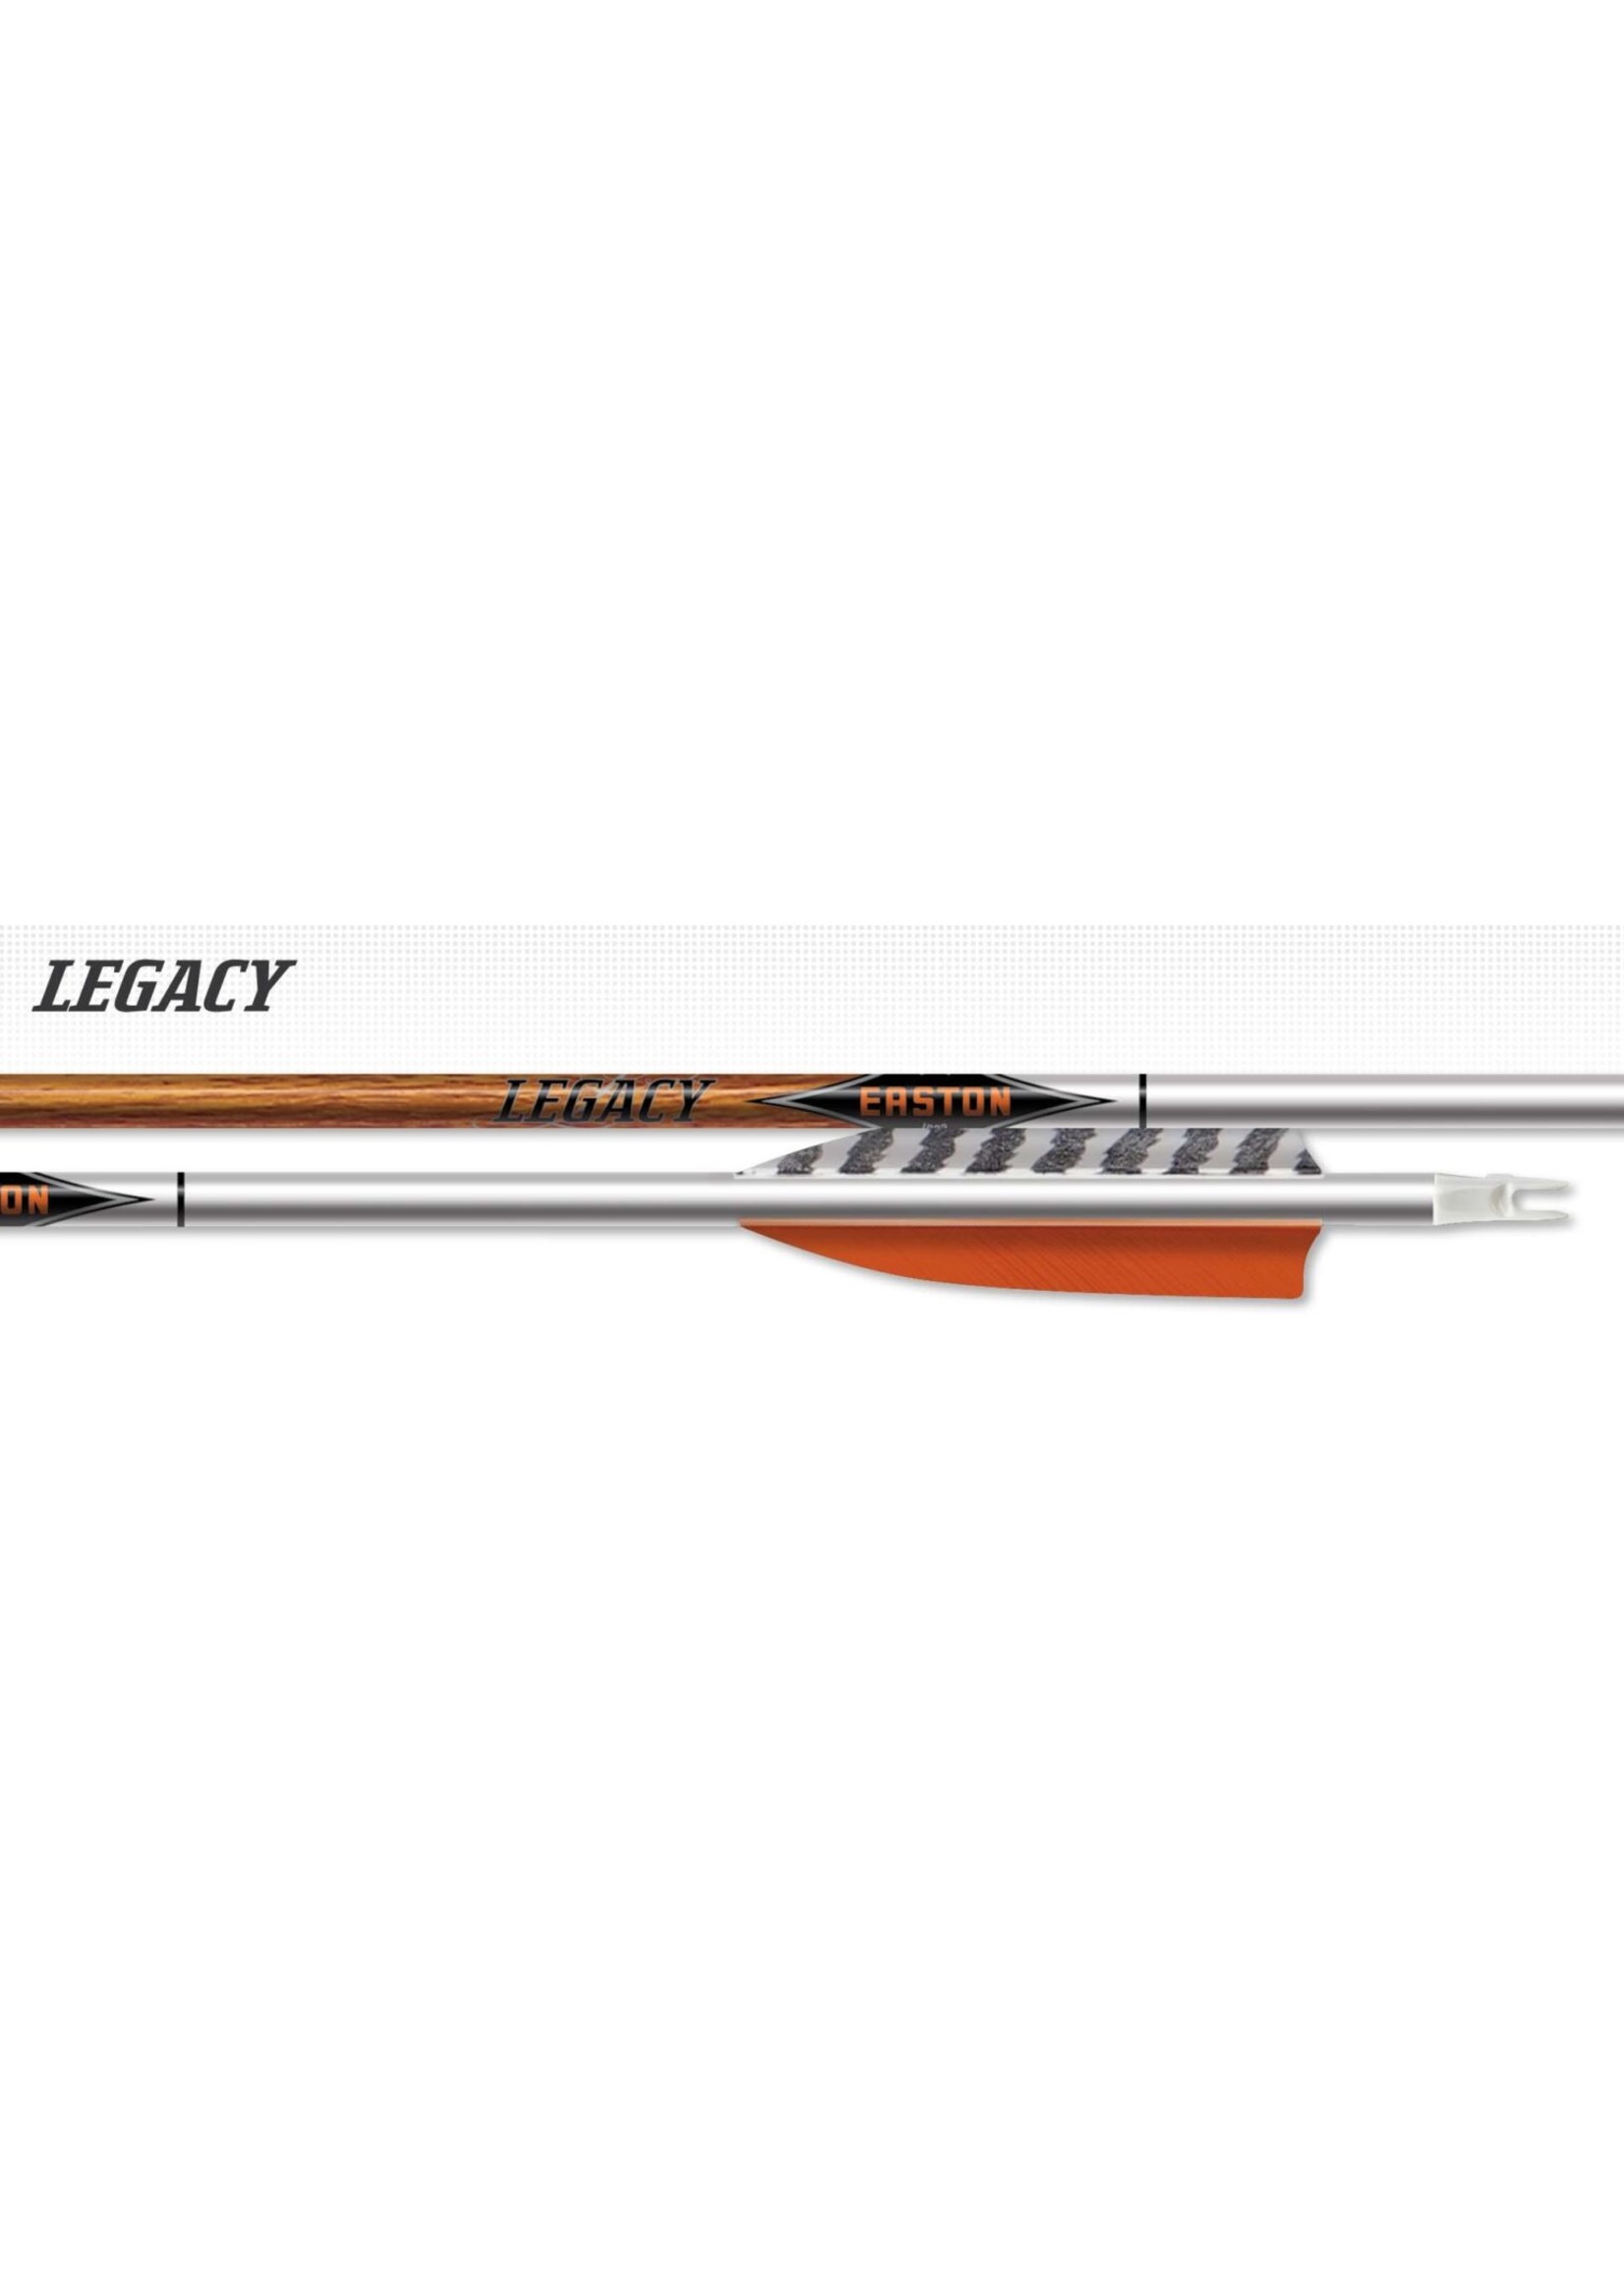 Easton Archery Easton Carbon Legacy Shaft